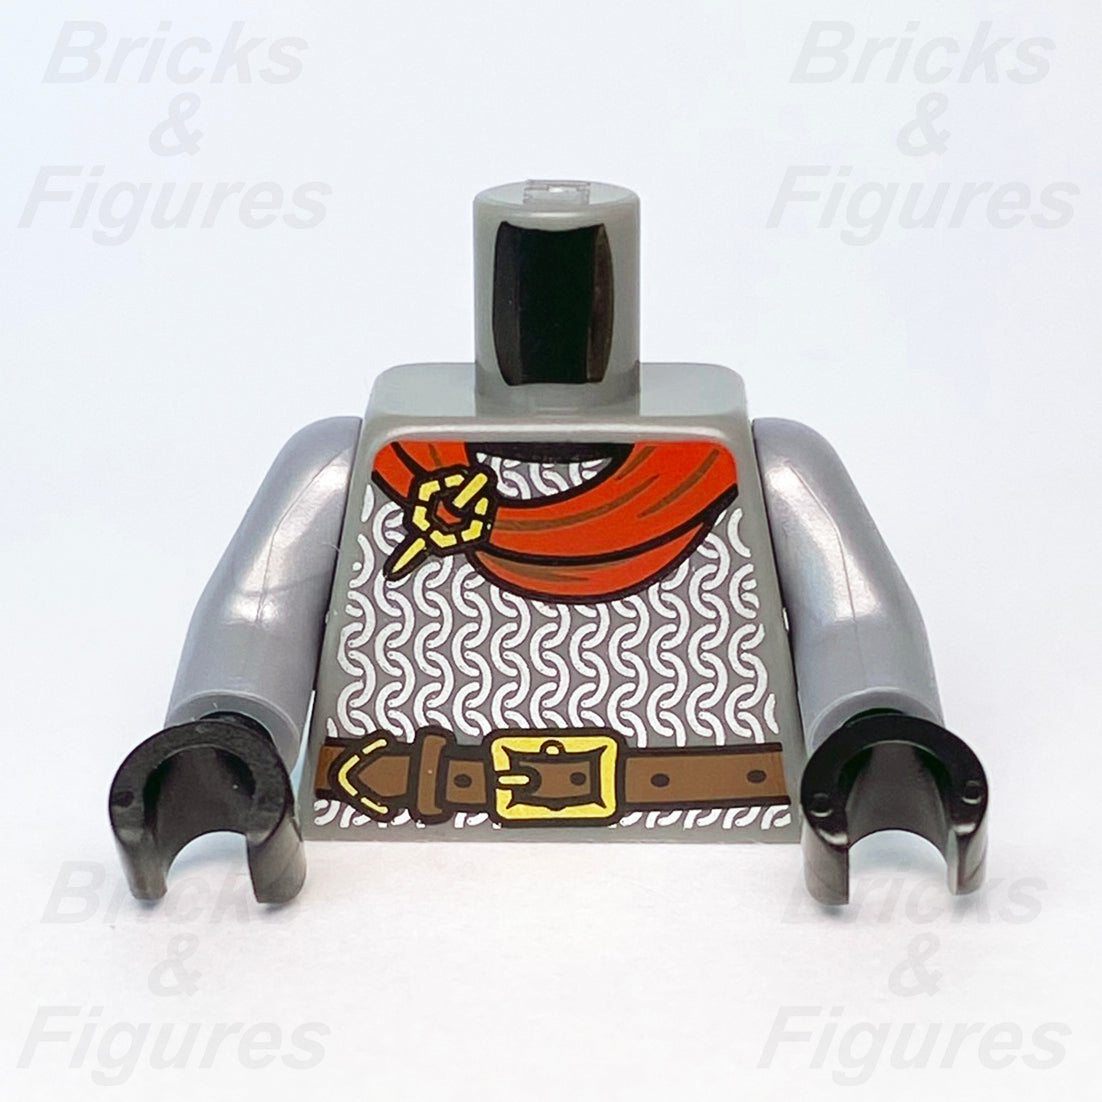 LEGO Build-A-Minifigure Parts